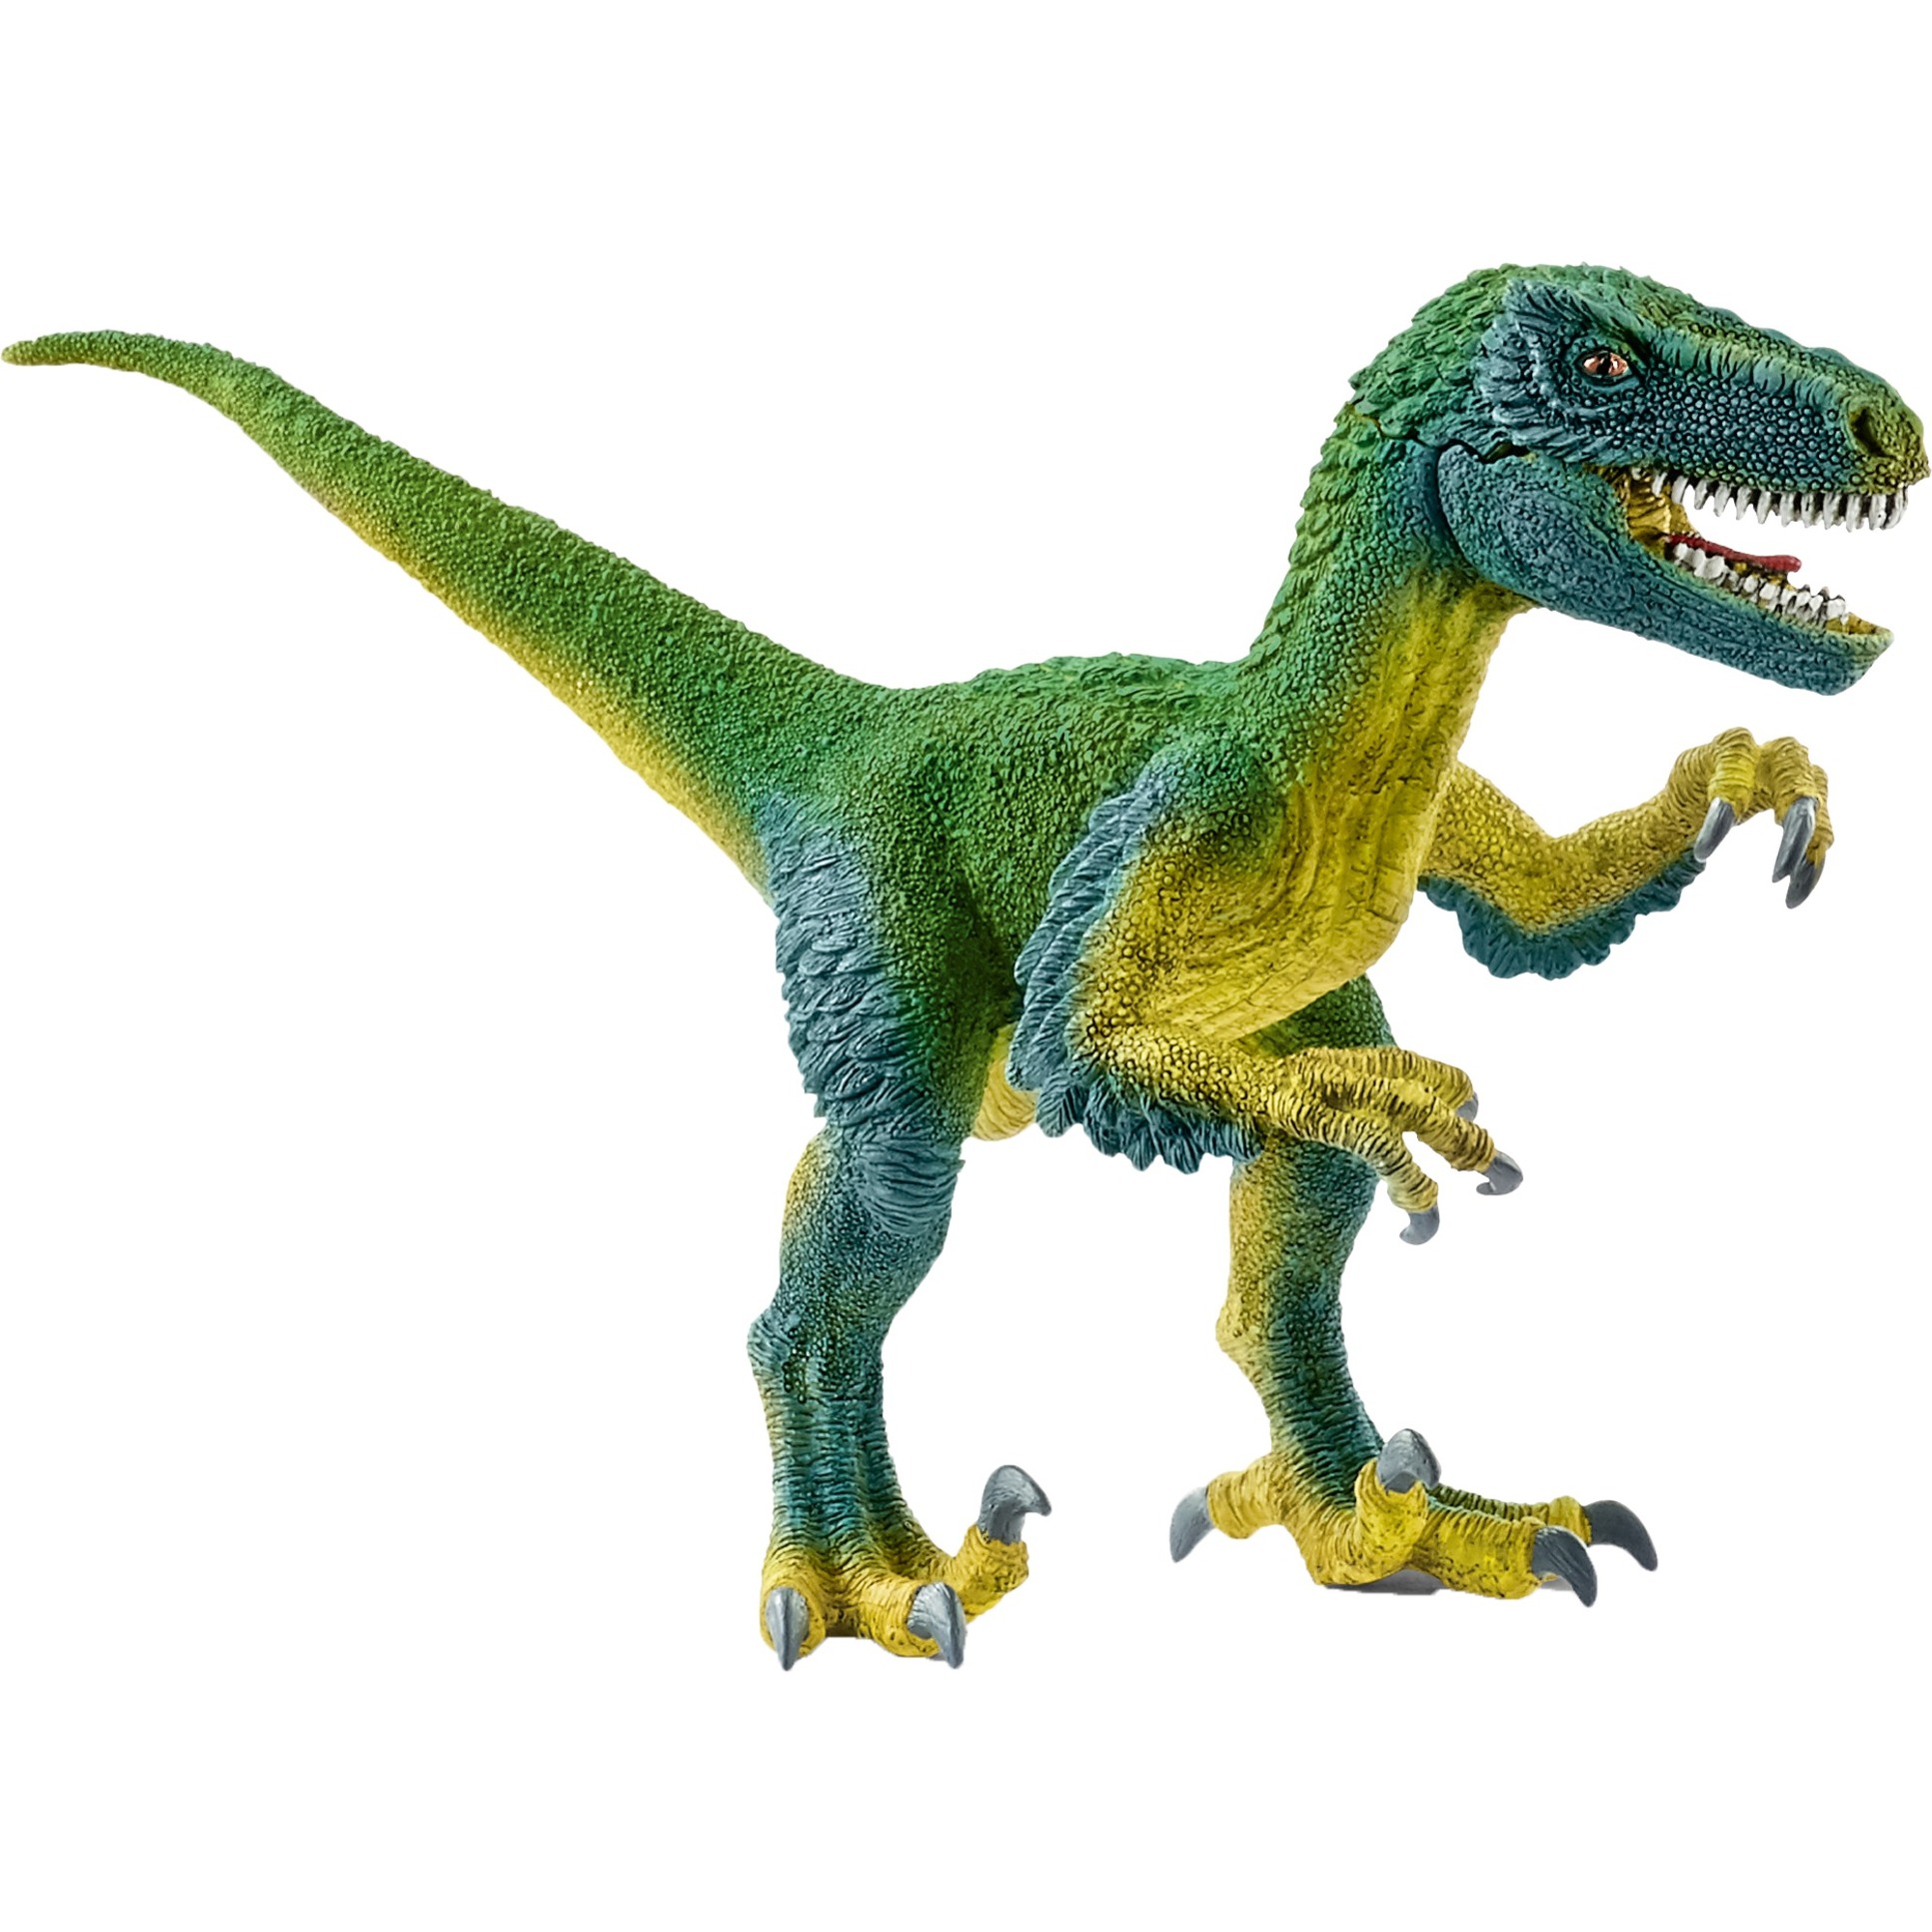 Image of Alternate - Velociraptor, Spielfigur online einkaufen bei Alternate